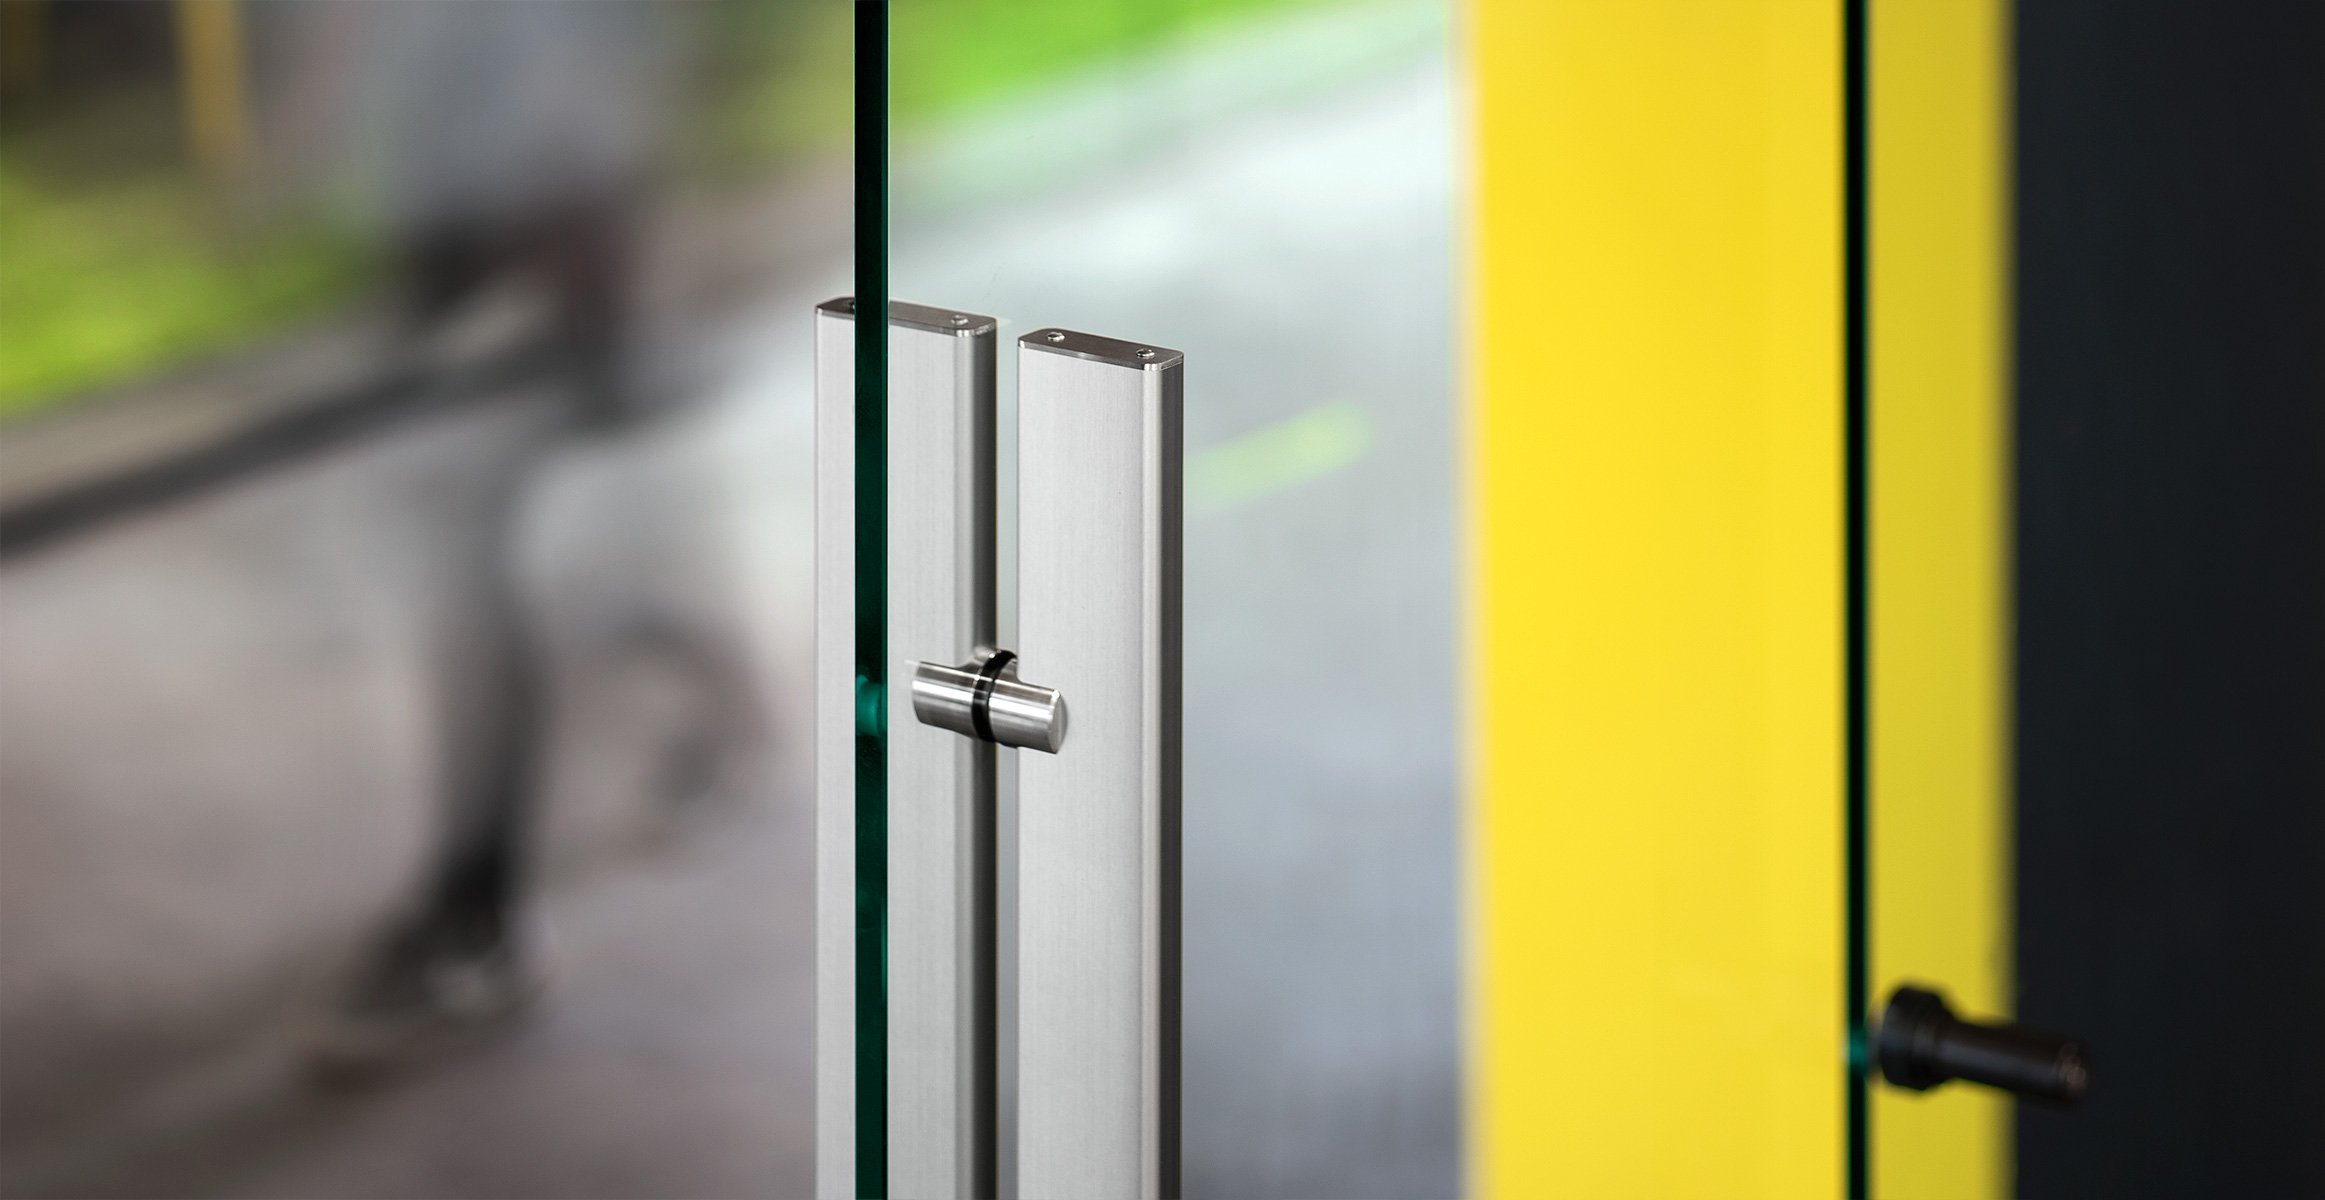 Stainless steel door pull for glass door